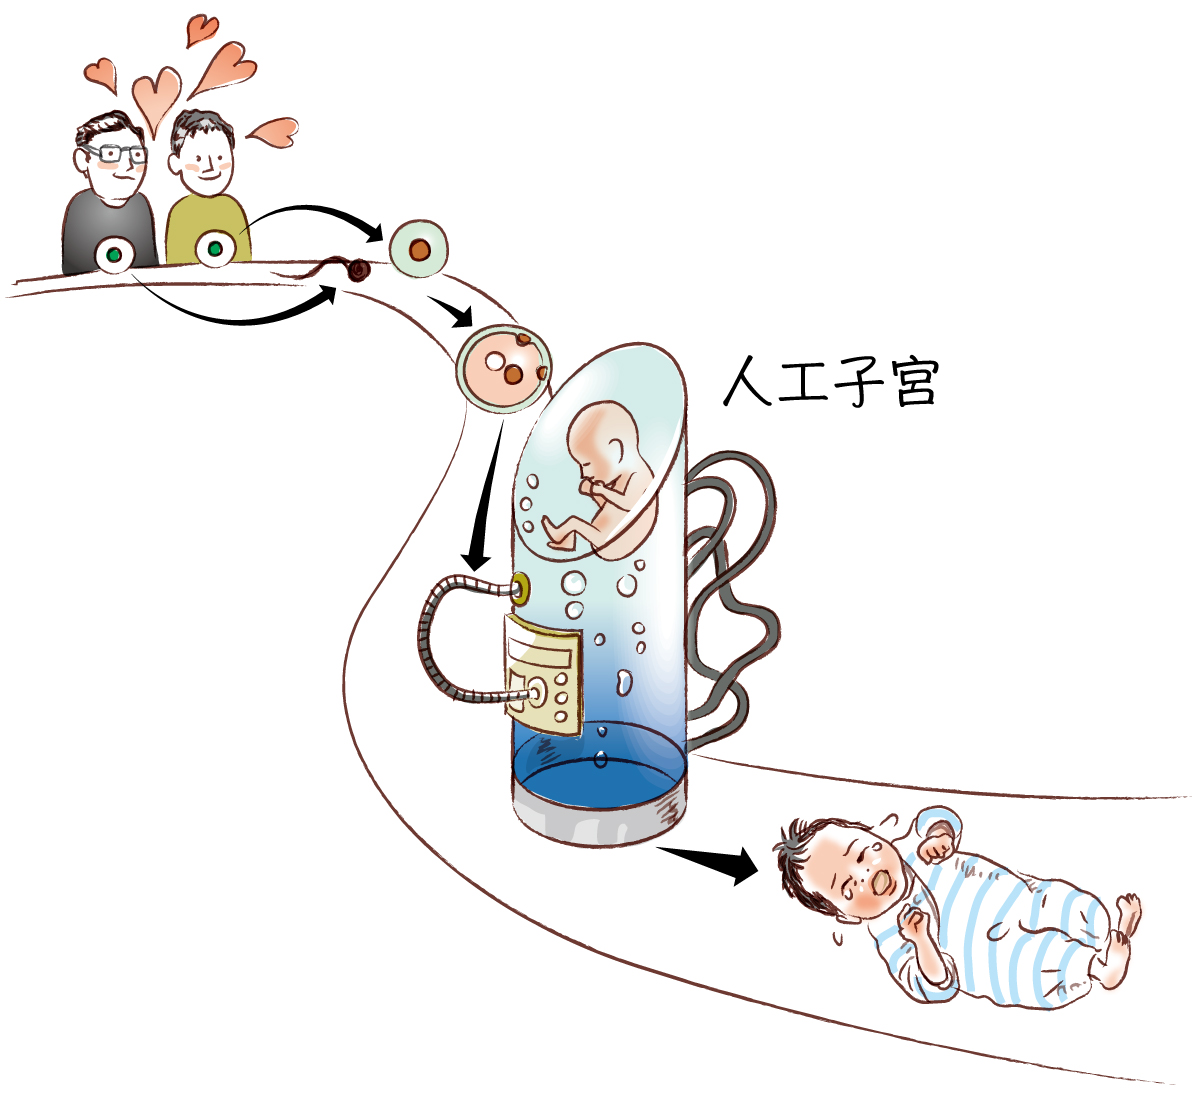 始原生殖細胞を活用した生殖技術